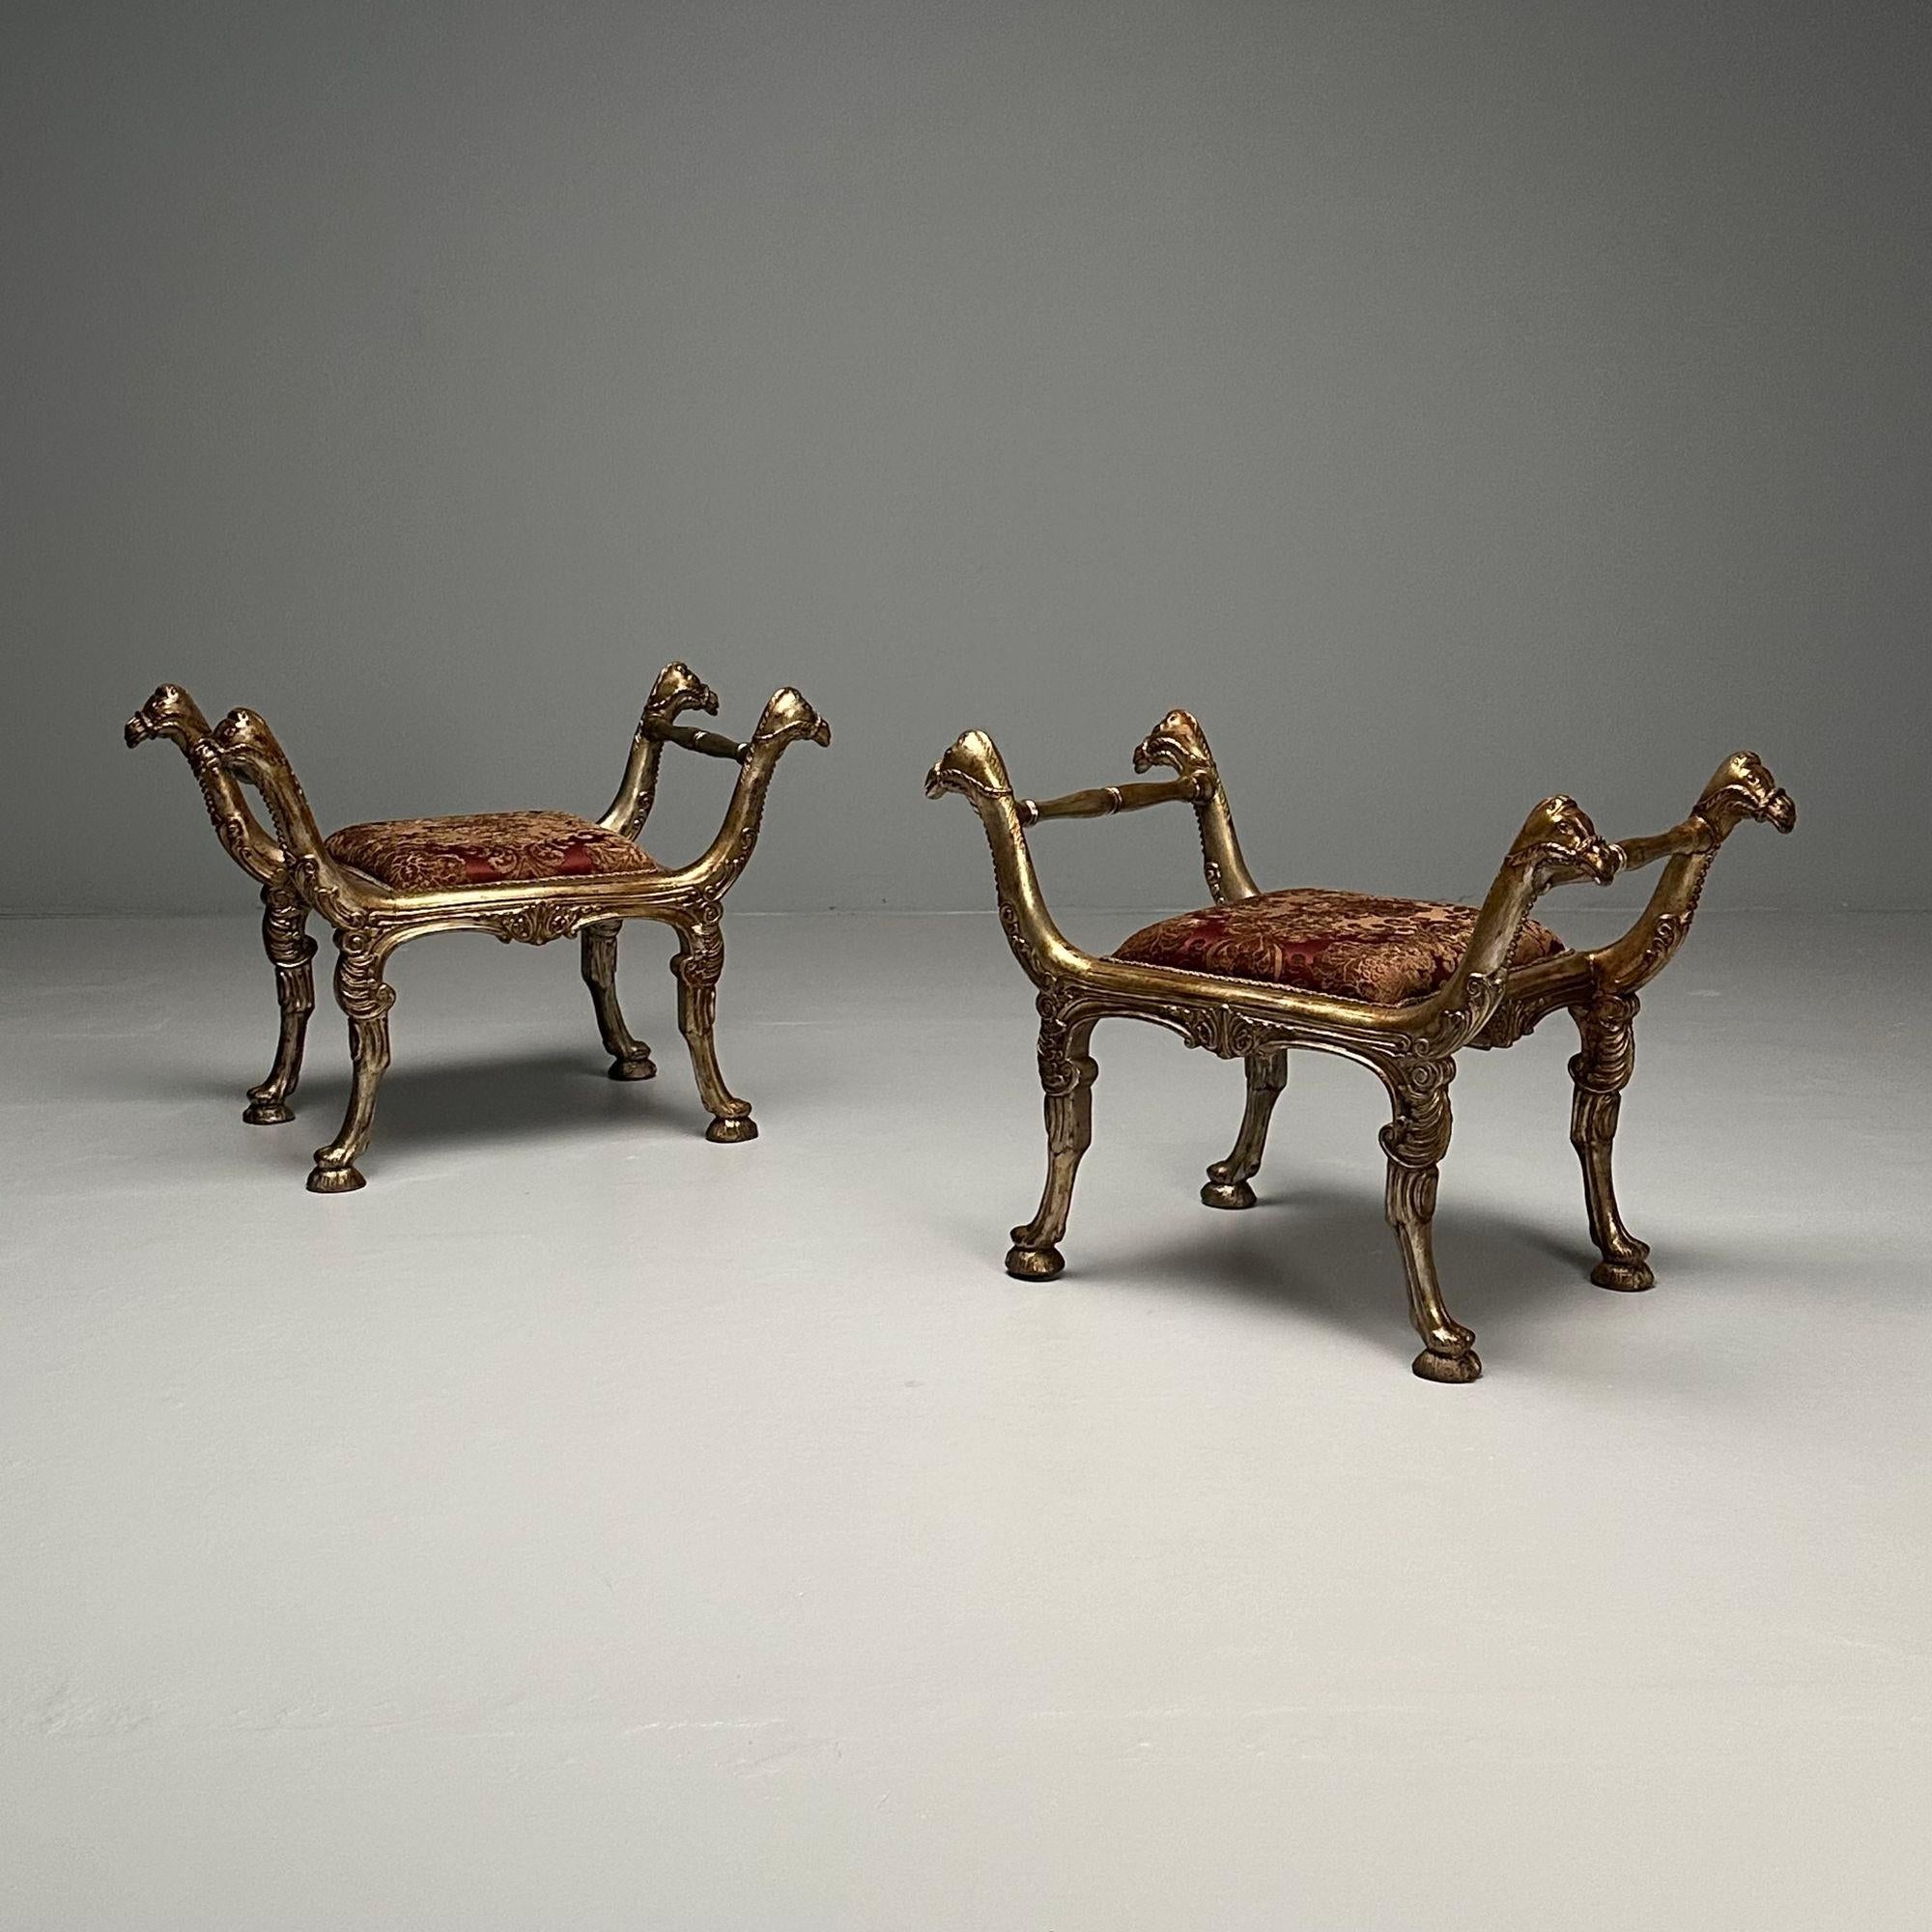 Zwei geschnitzte und versilberte Curule-Bänke im neoklassizistischen Stil aus italienischem Giltwood,

Das Paar hat einen feinen Ton unter einer vergoldeten Oberfläche mit Akanthusarmen mit Kamelkopfenden, gepolsterten Sitzen, ausgezogenen Beinen